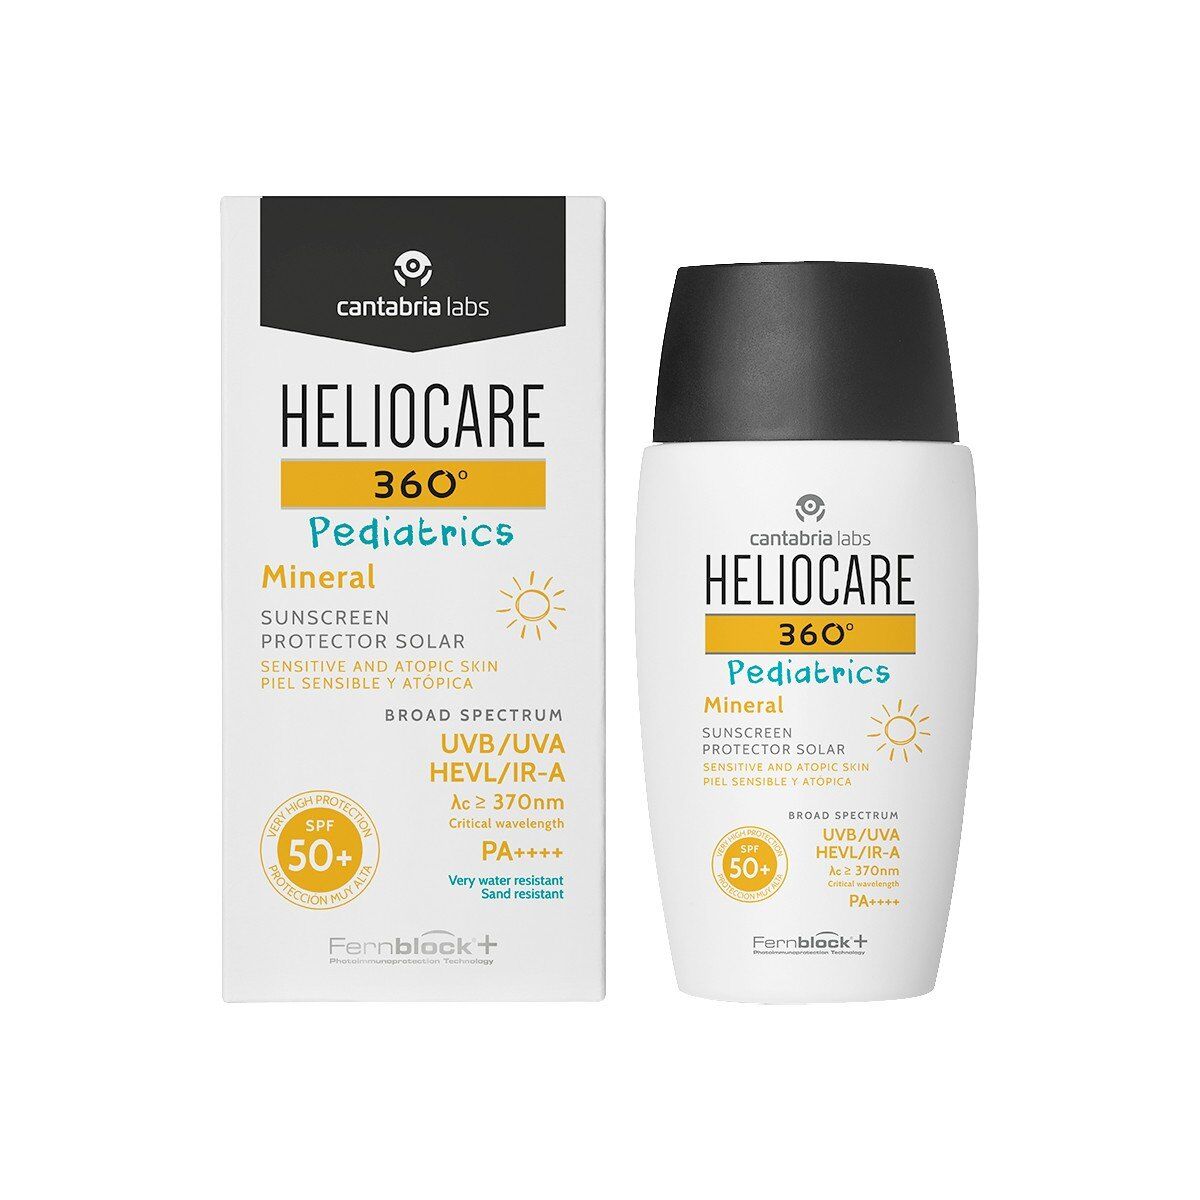 Heliocare - 360 Pediatric Mineral SPF 50+